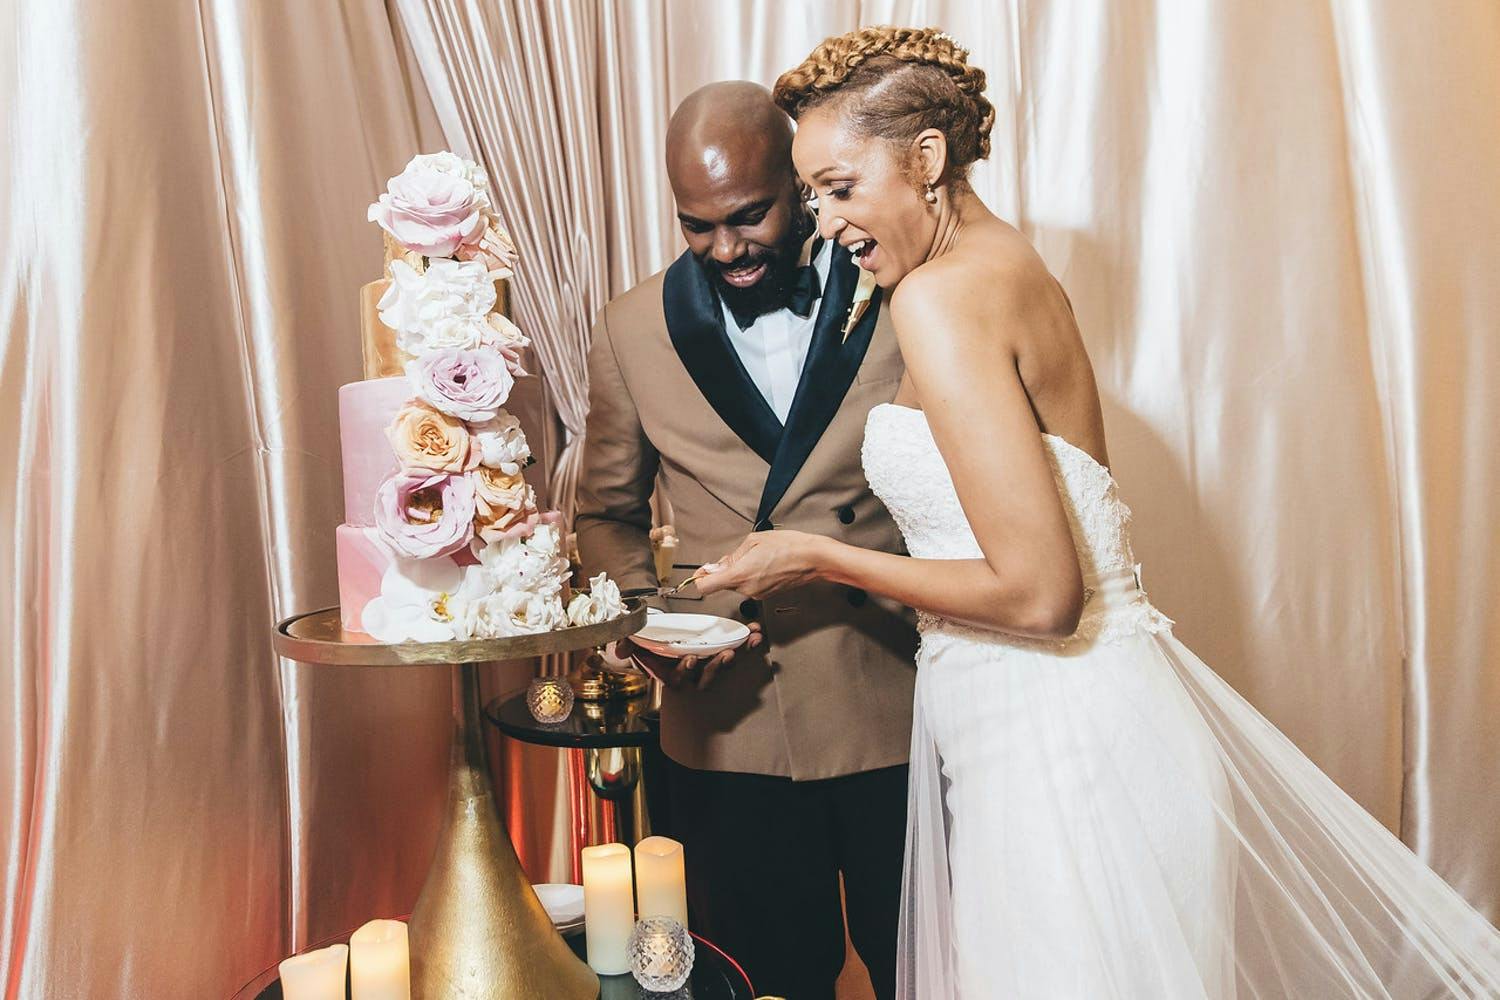 47 Unique Wedding Cake Design Ideas - Craftsy Hacks